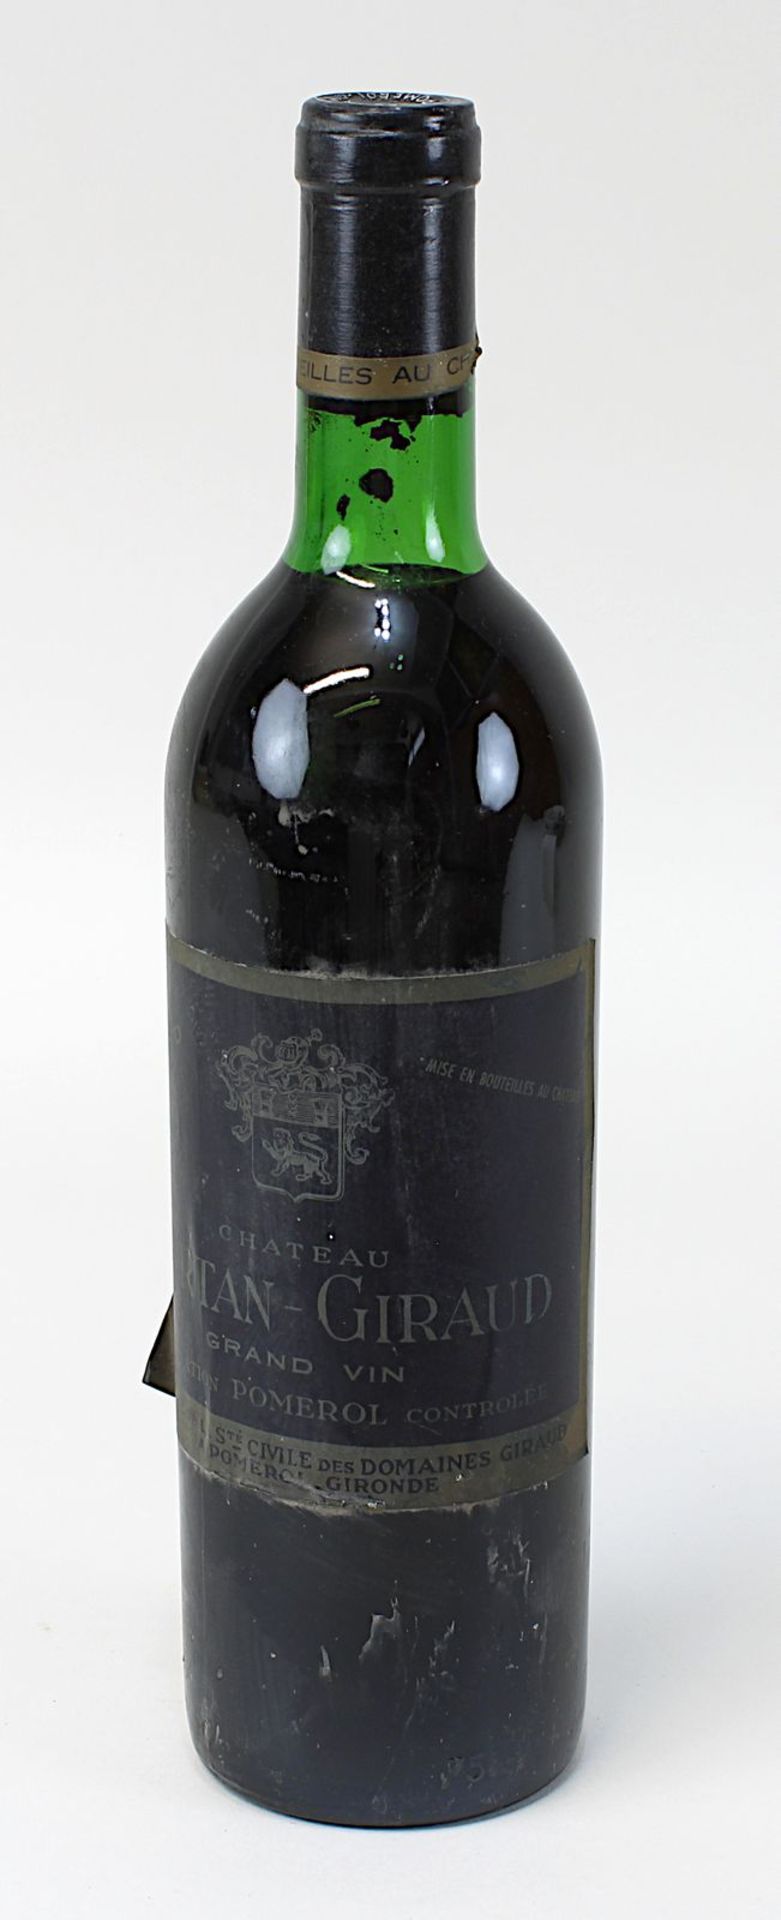 Eine Flasche 1970er Château Certain-Giraud, Grand Vin Pomerol, Ste. Civile des Domaines Giraud